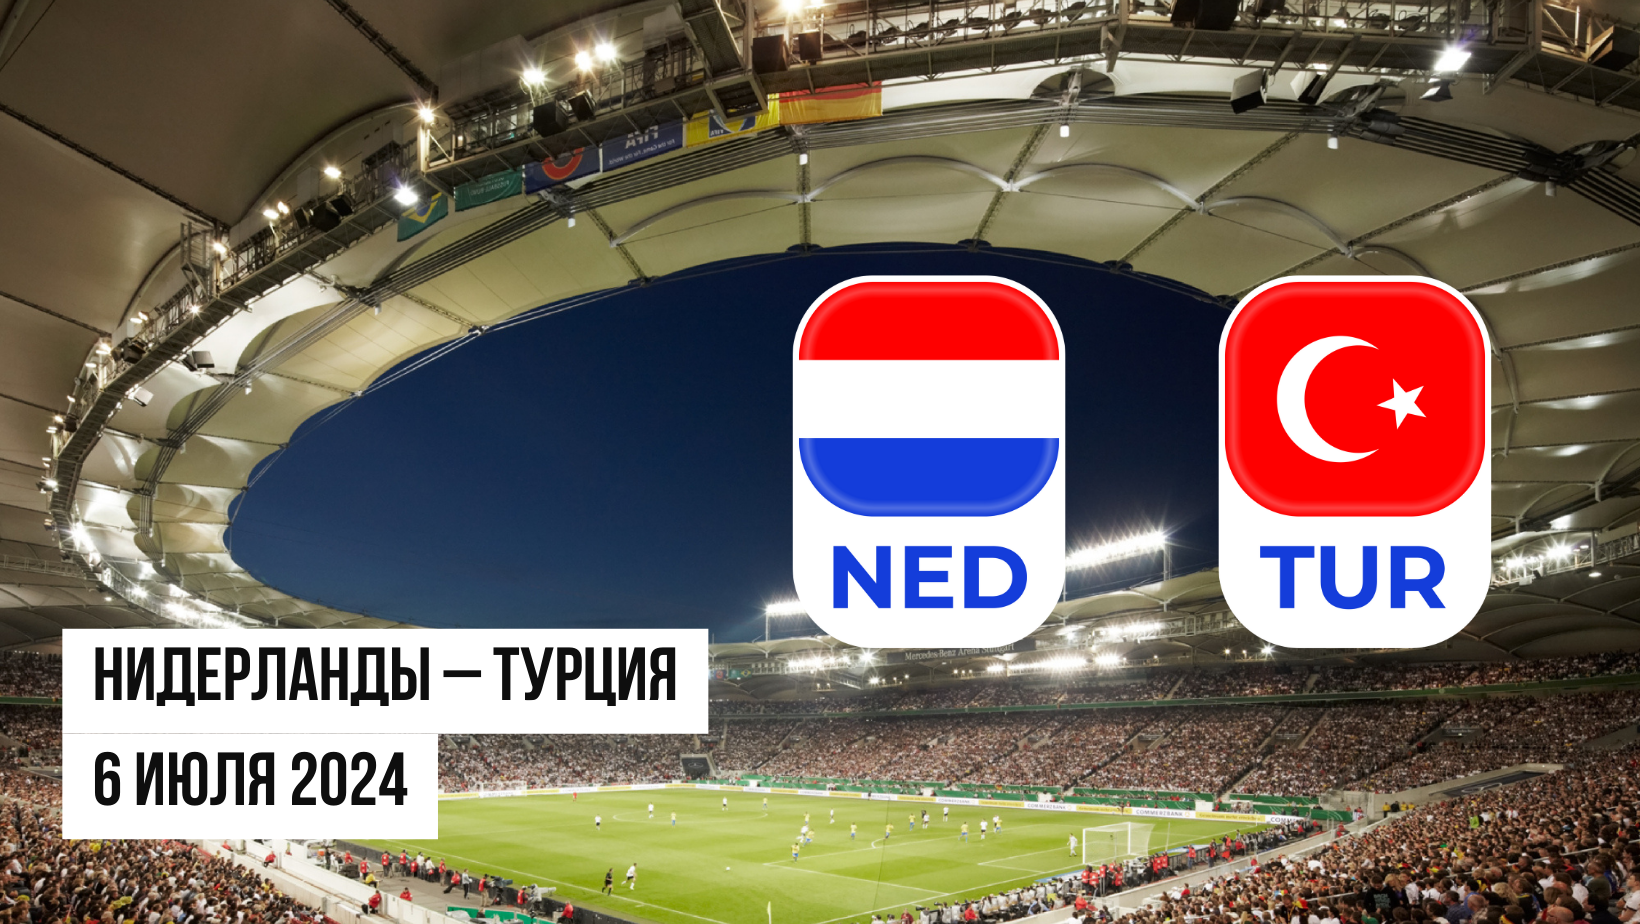 Нидерланды – Турция ставки и коэффициенты на матч Евро 2024 - 06.07